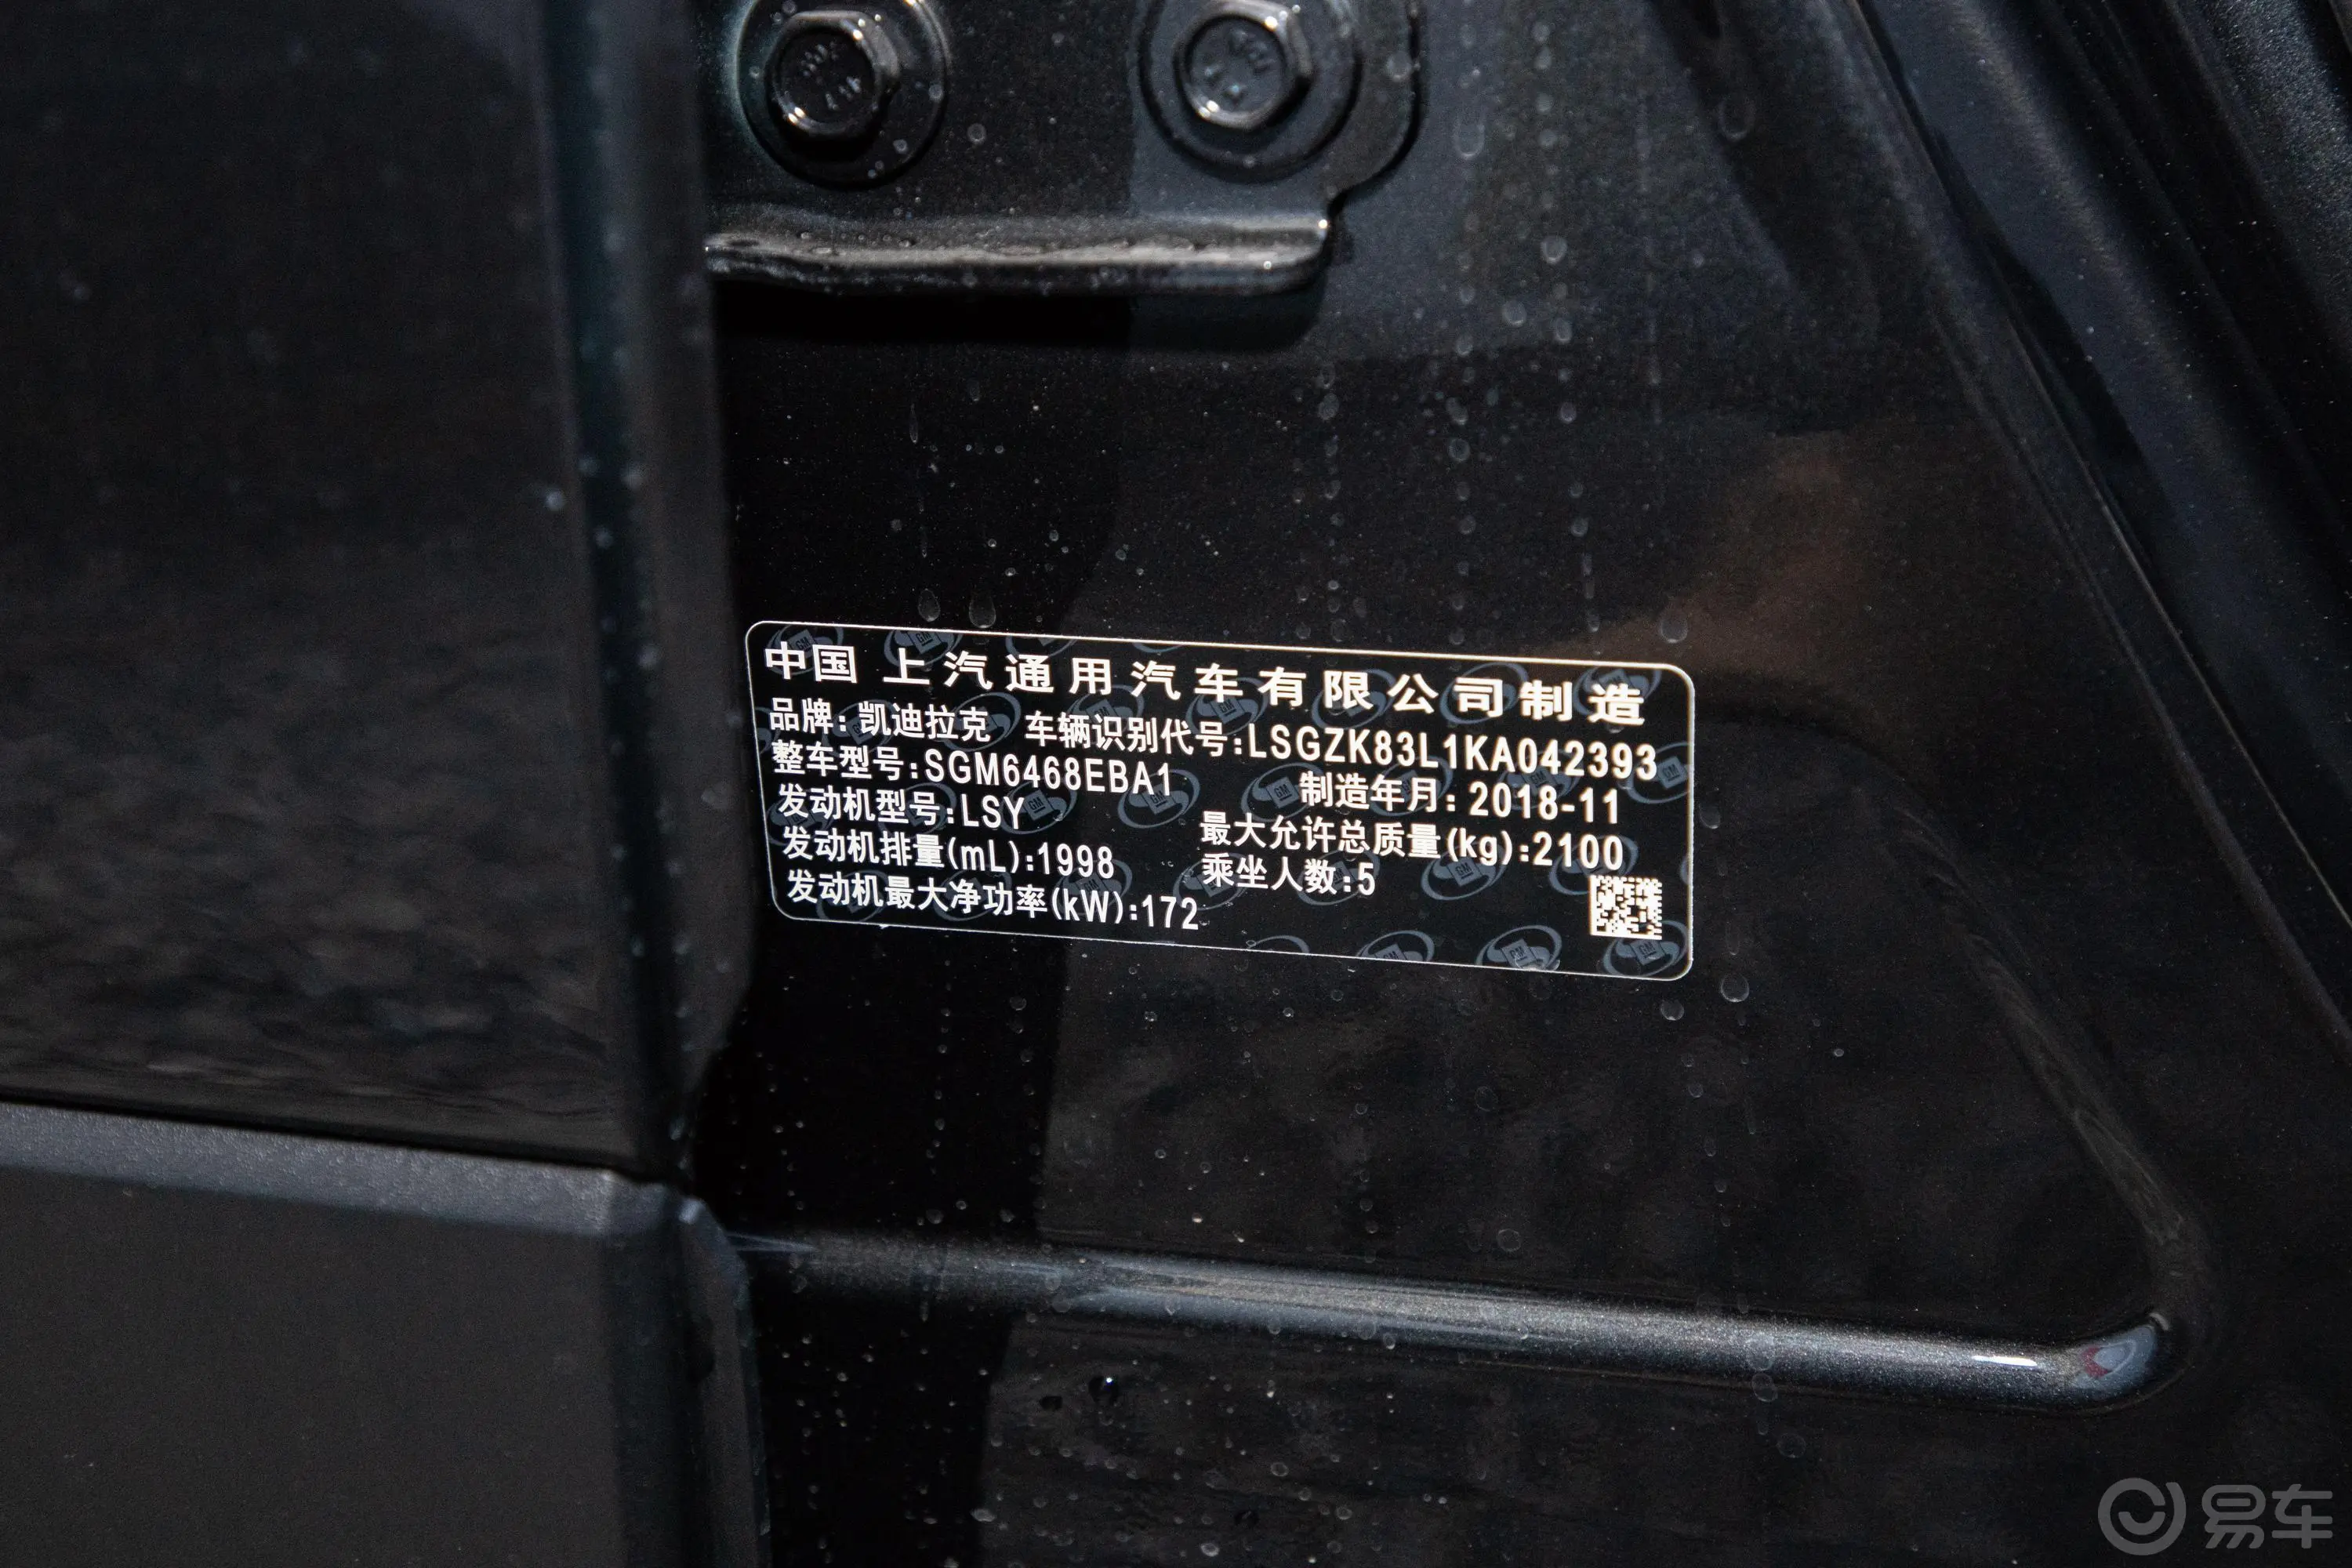 凯迪拉克XT428T 两驱 豪华运动版车辆信息铭牌